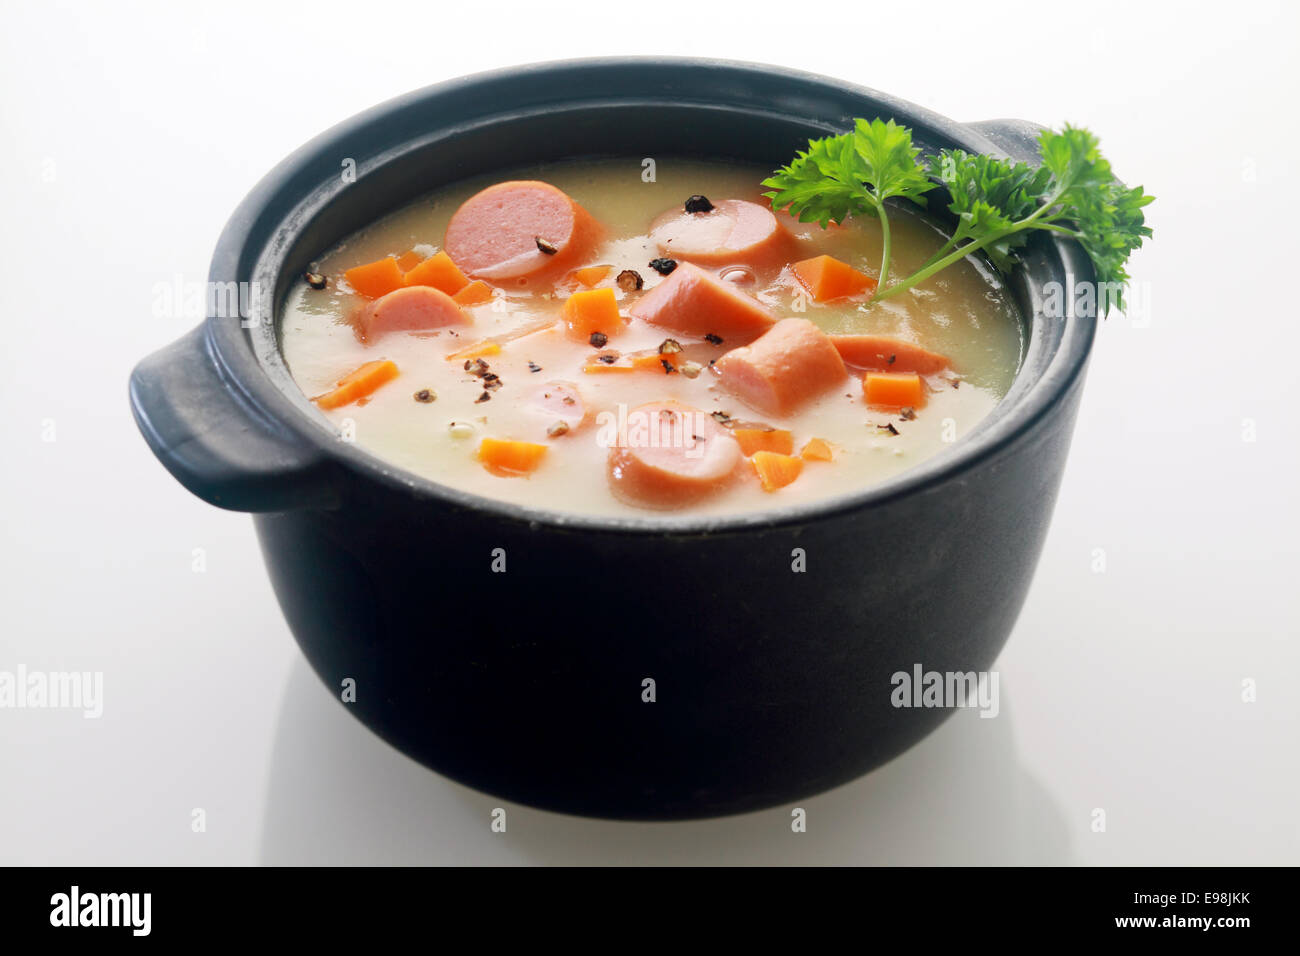 Appetitlich Hauptgericht Suppe Gericht Rezept auf schwarzen Topf auf grauem Hintergrund isoliert. Stockfoto